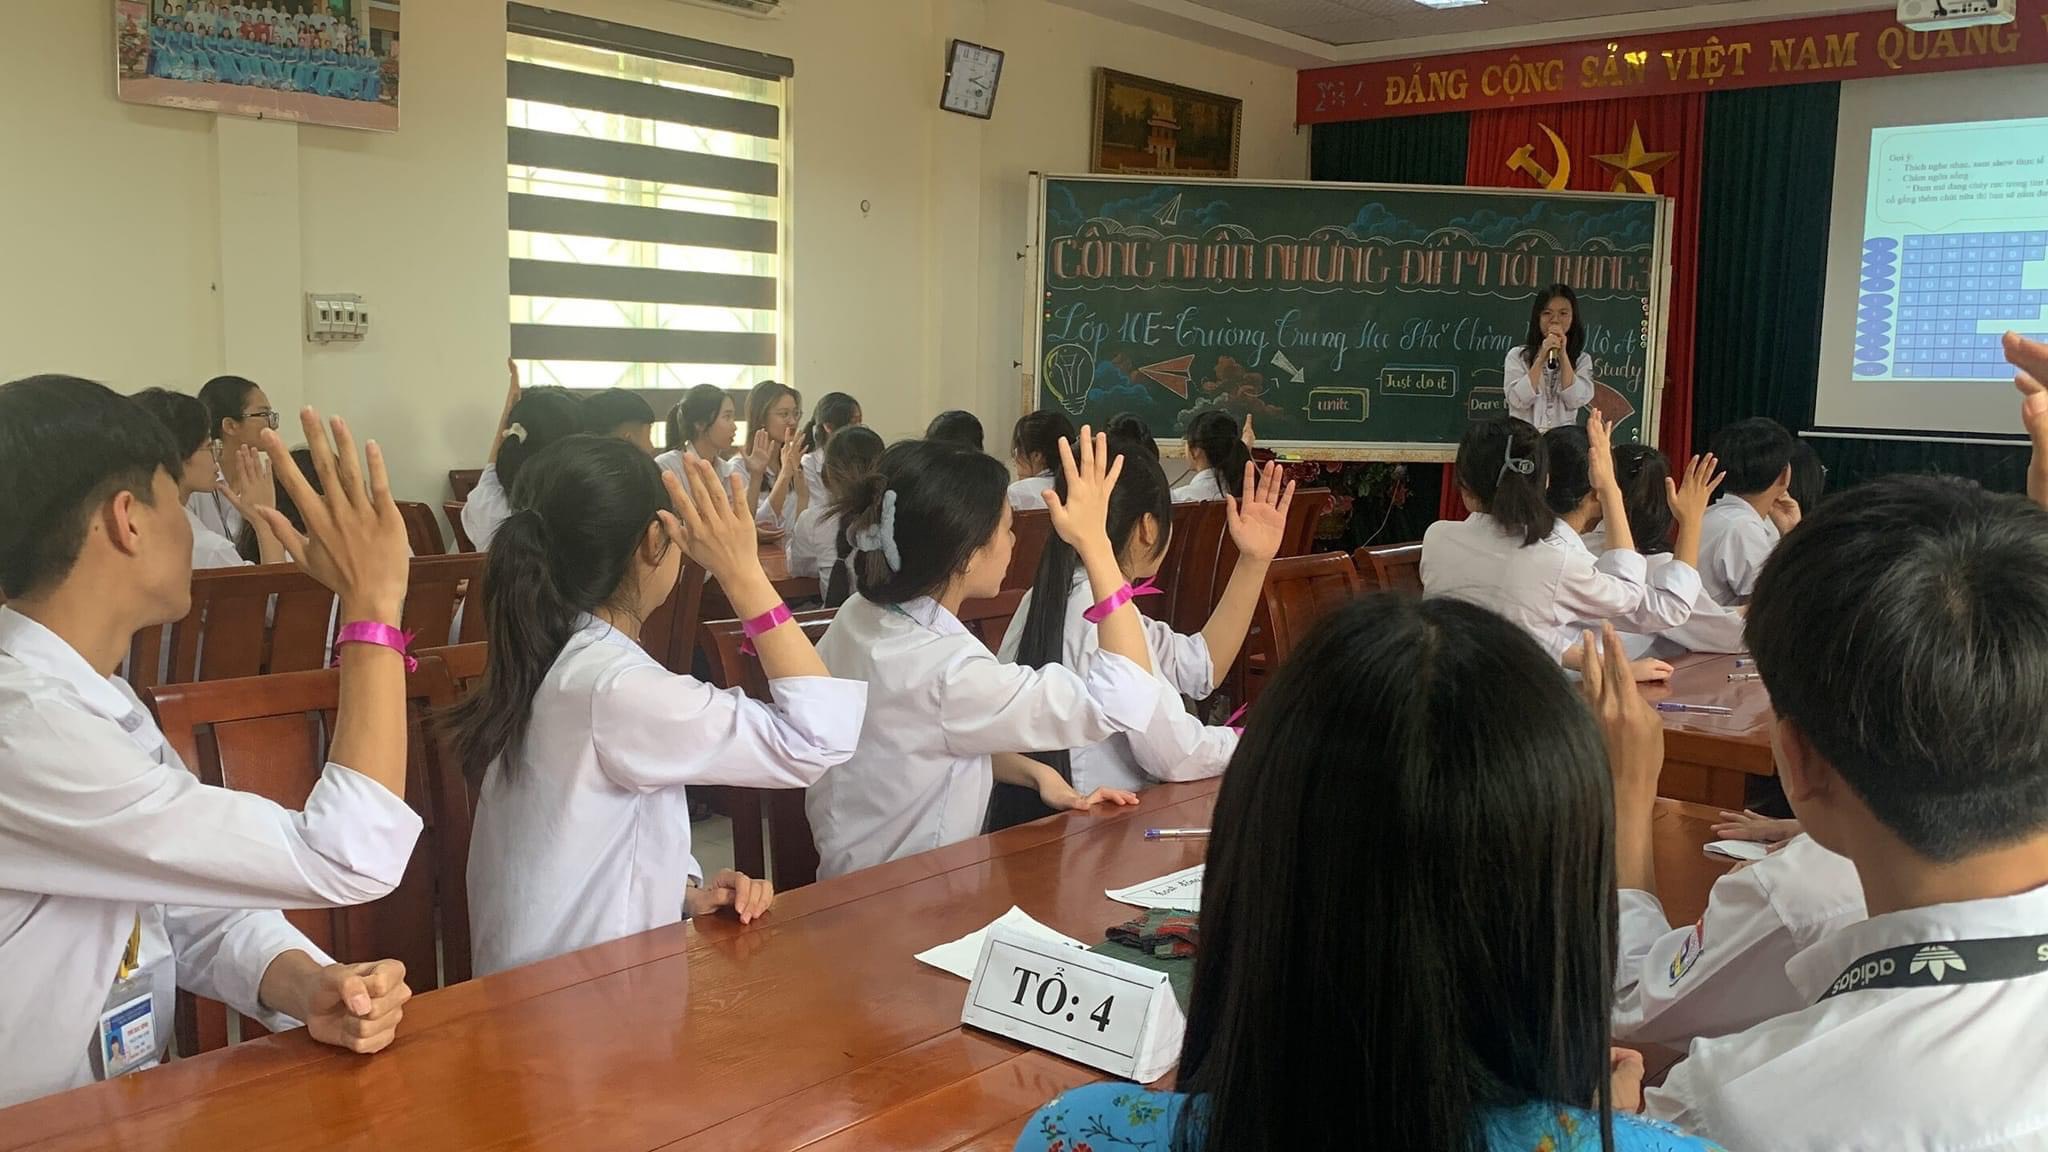 Đoàn trường THPT Yên Mô A triển khai phong trào “Học sinh 3 tốt”